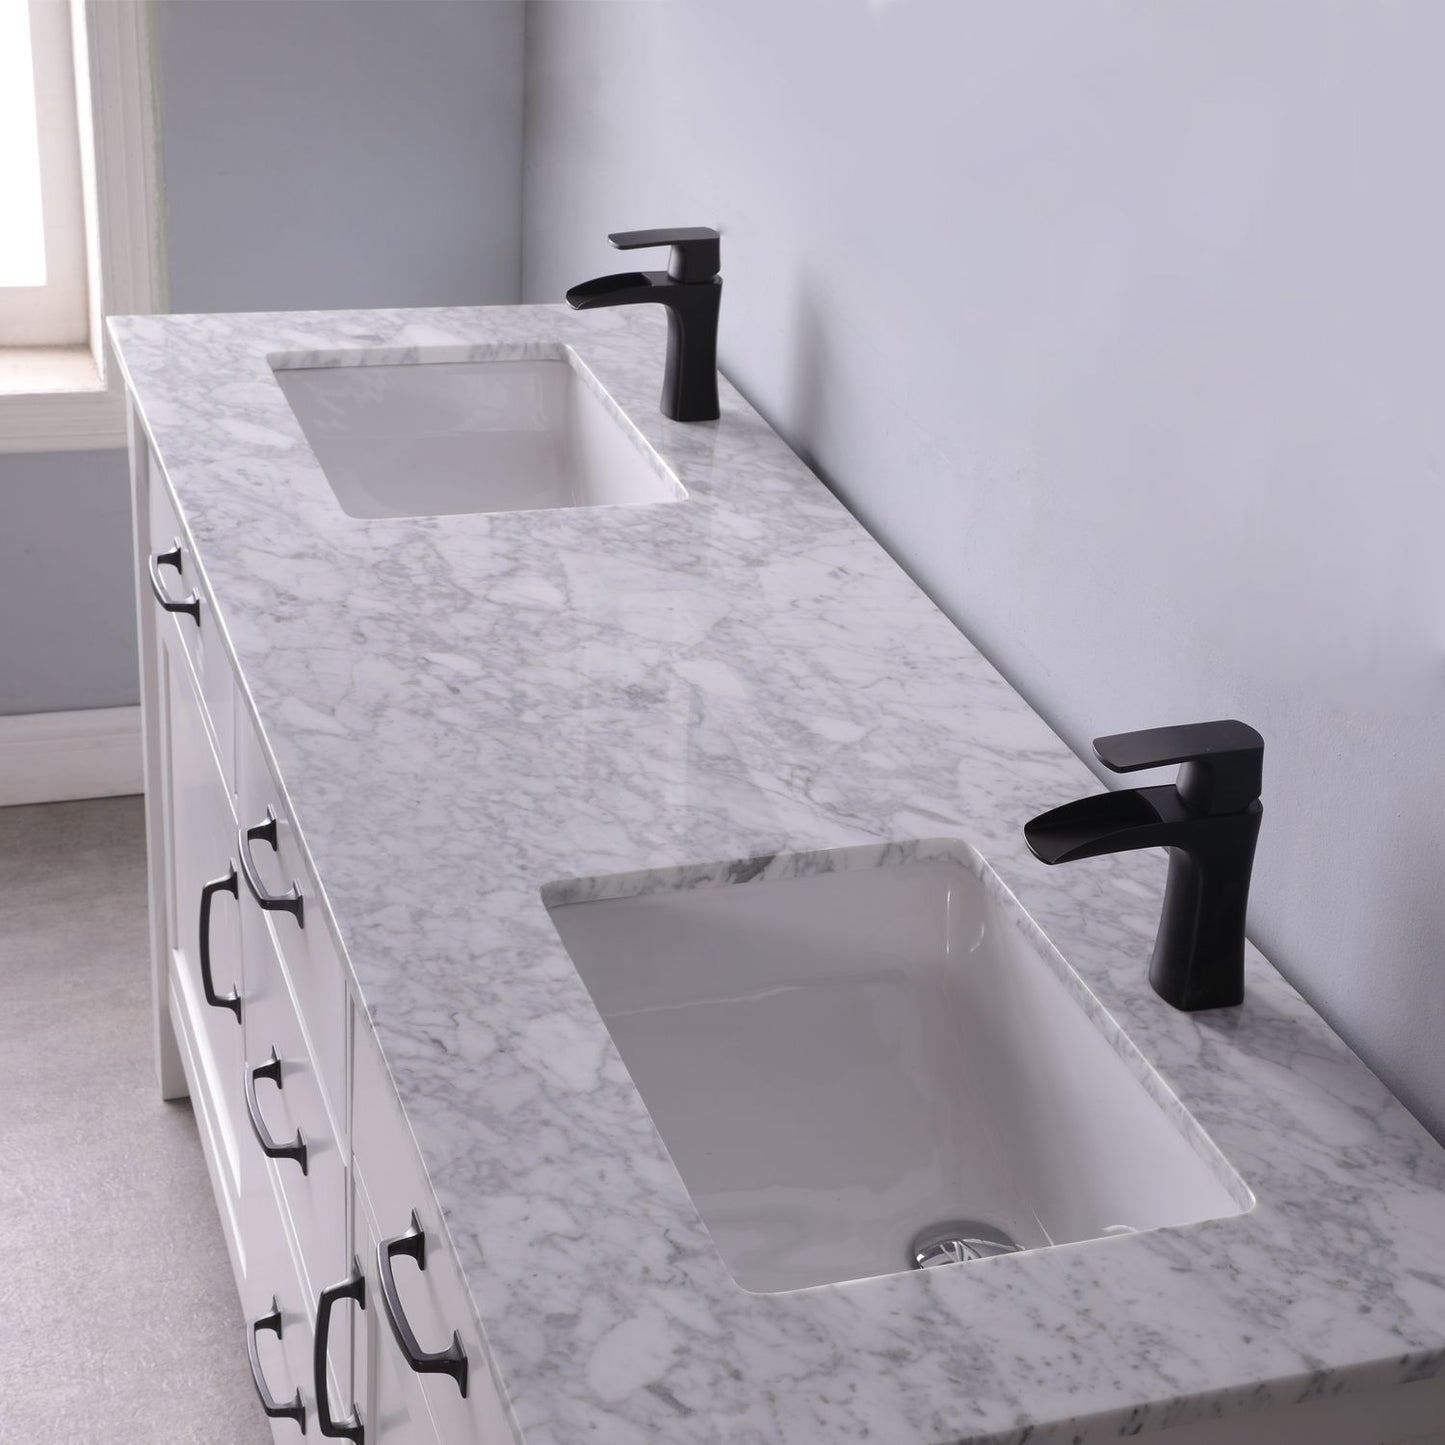 Altair Maribella 72" Double Bathroom Vanity Set Countertop without Mirror - Luxe Bathroom Vanities